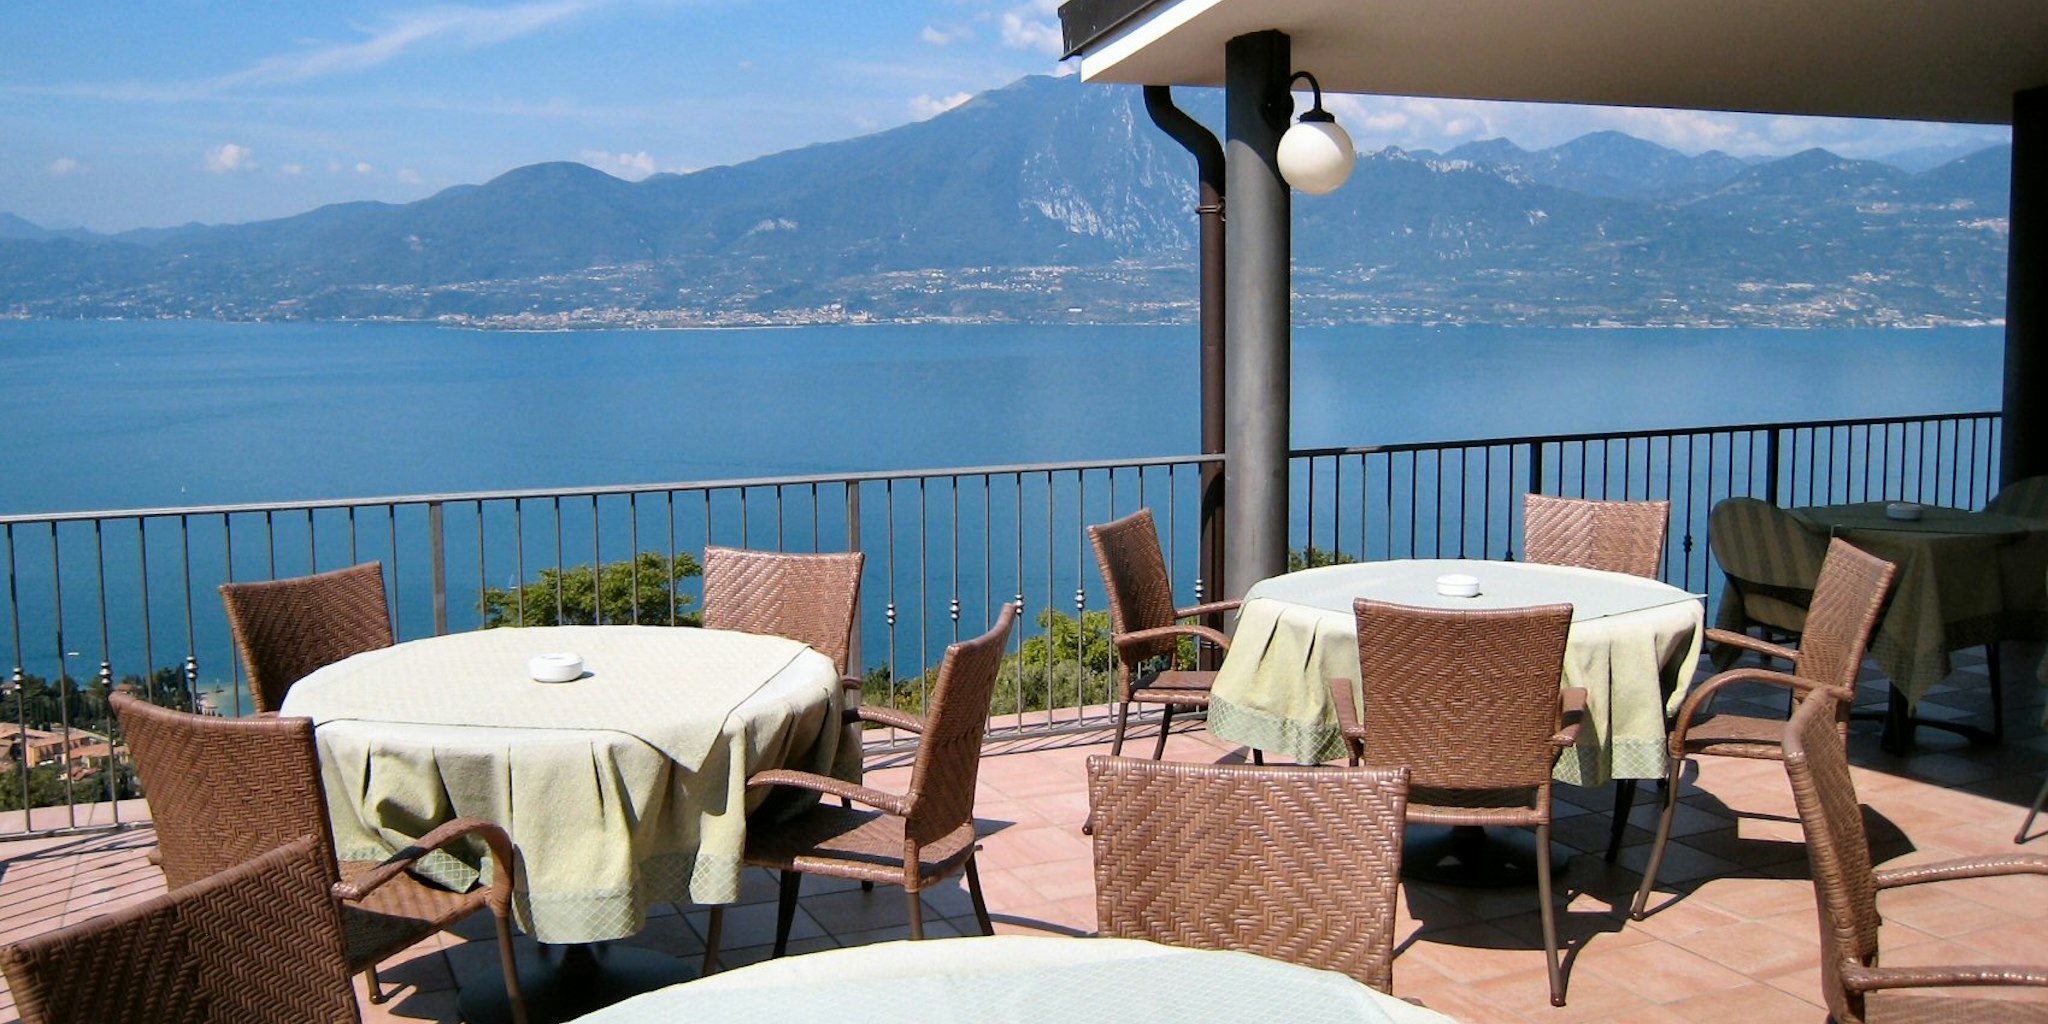 Hotel Panorama - Hotel in Torri del Benaco by Lake Garda